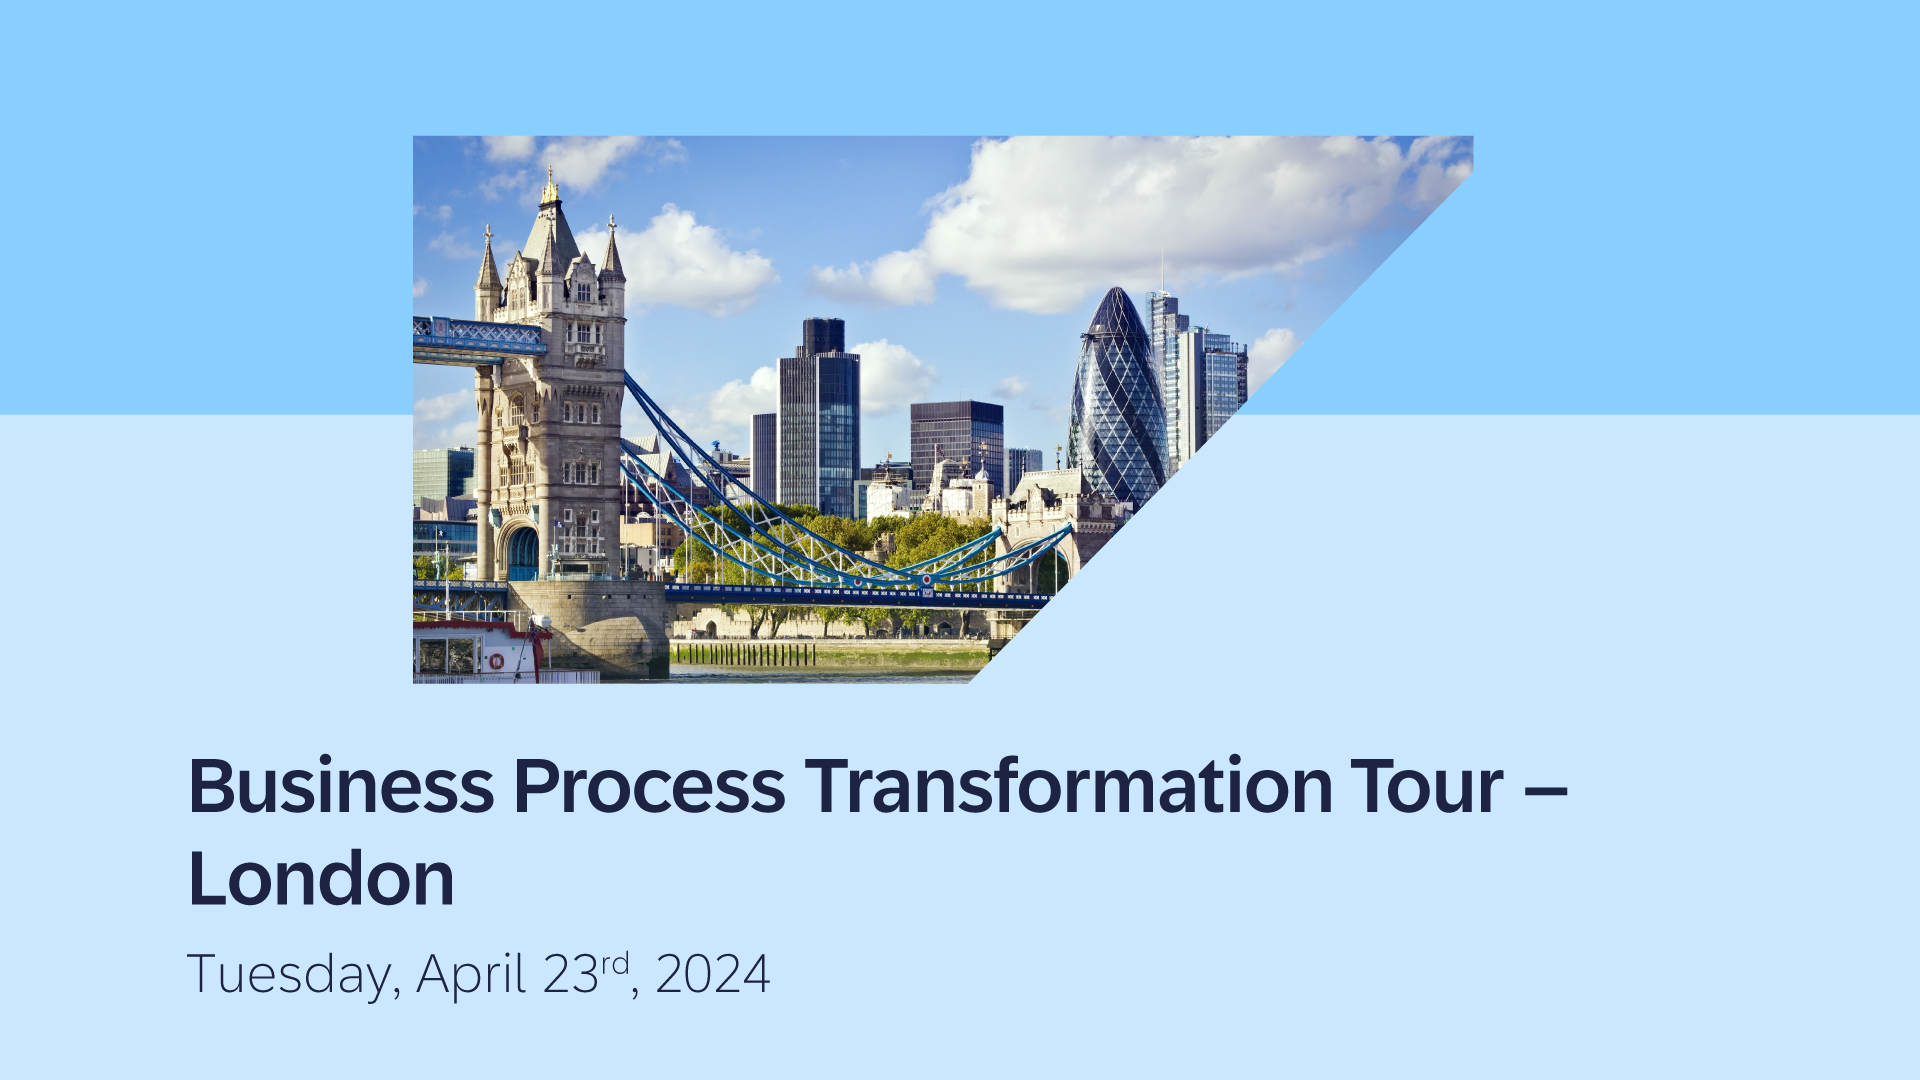 Business Process Transformation Tour - London